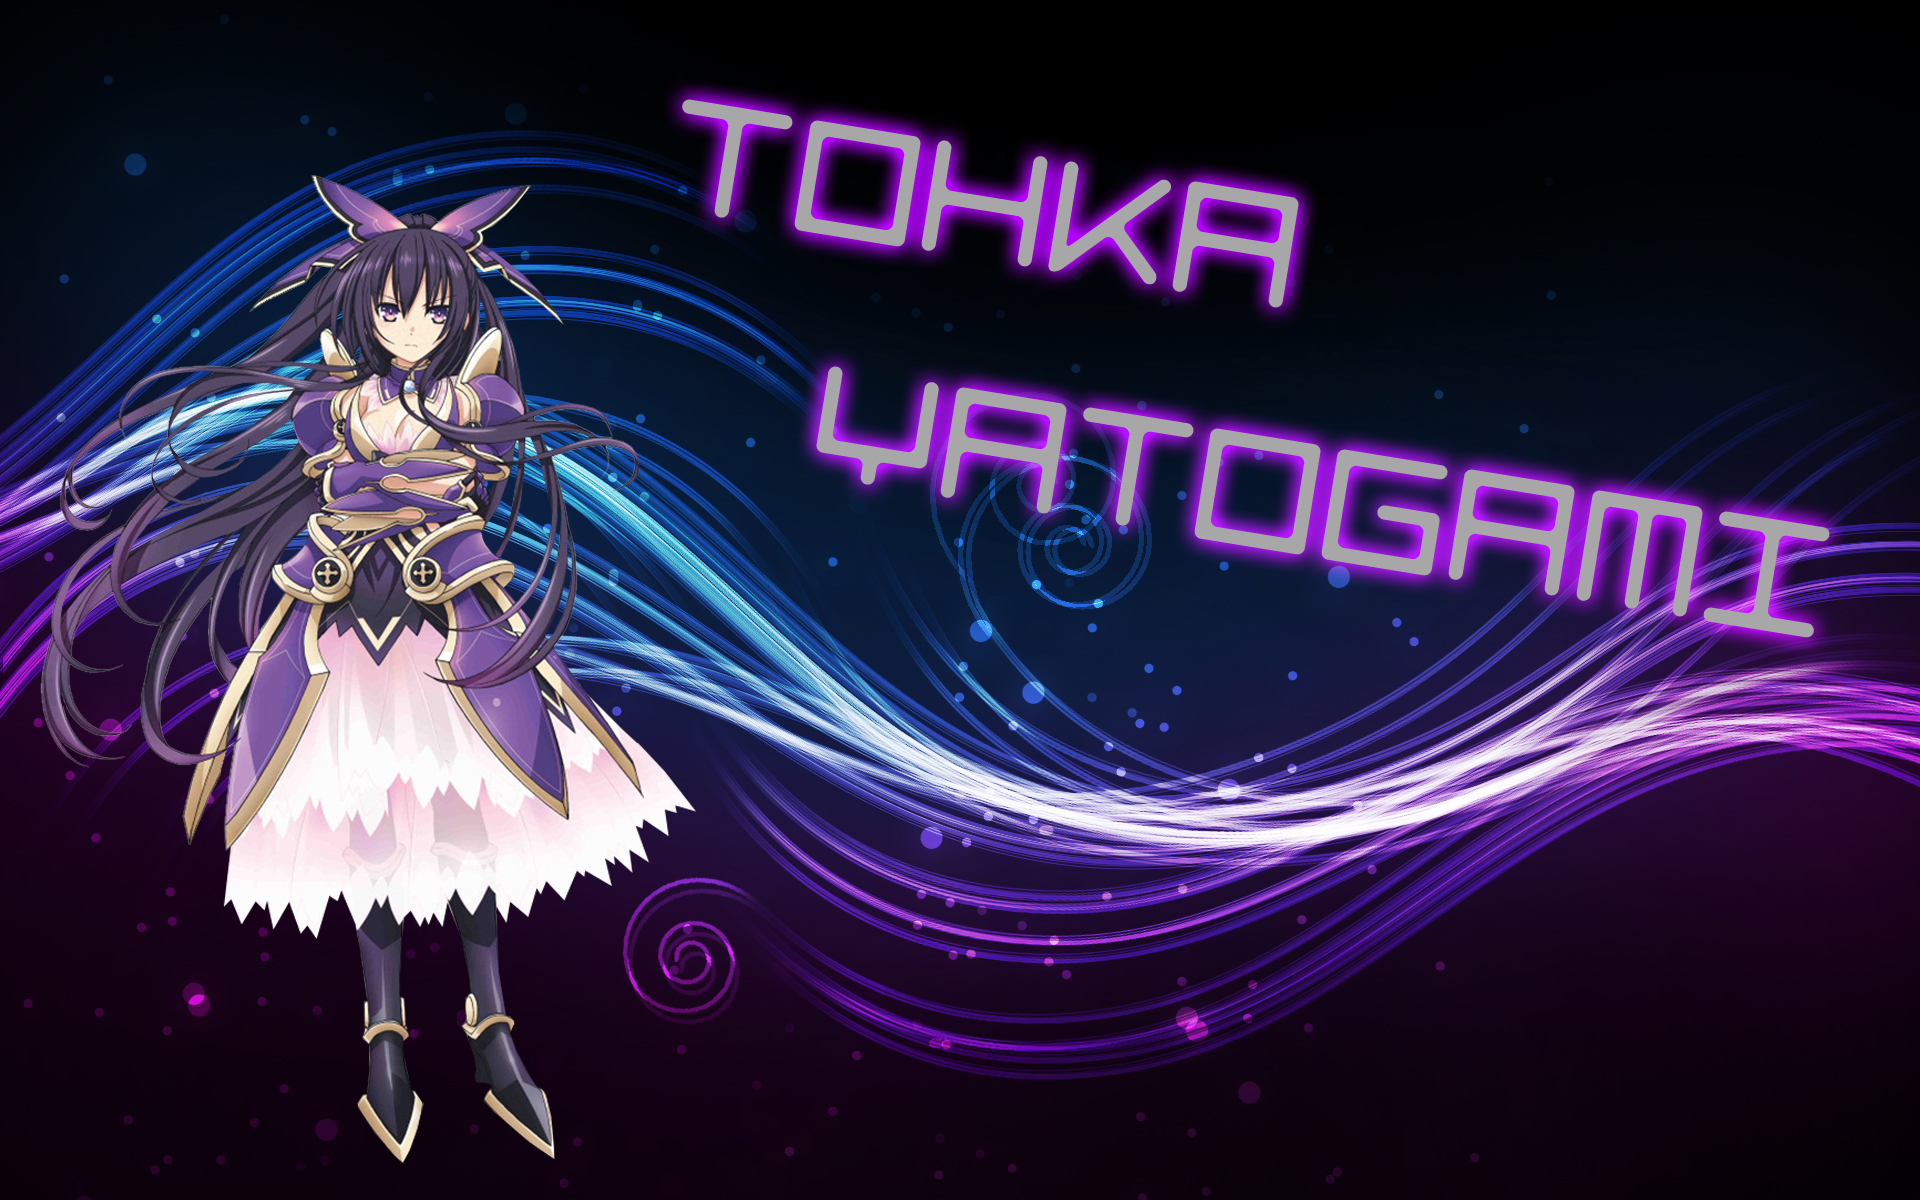 fondo de pantalla tohka yatogami,púrpura,violeta,diseño gráfico,personaje de ficción,gráficos